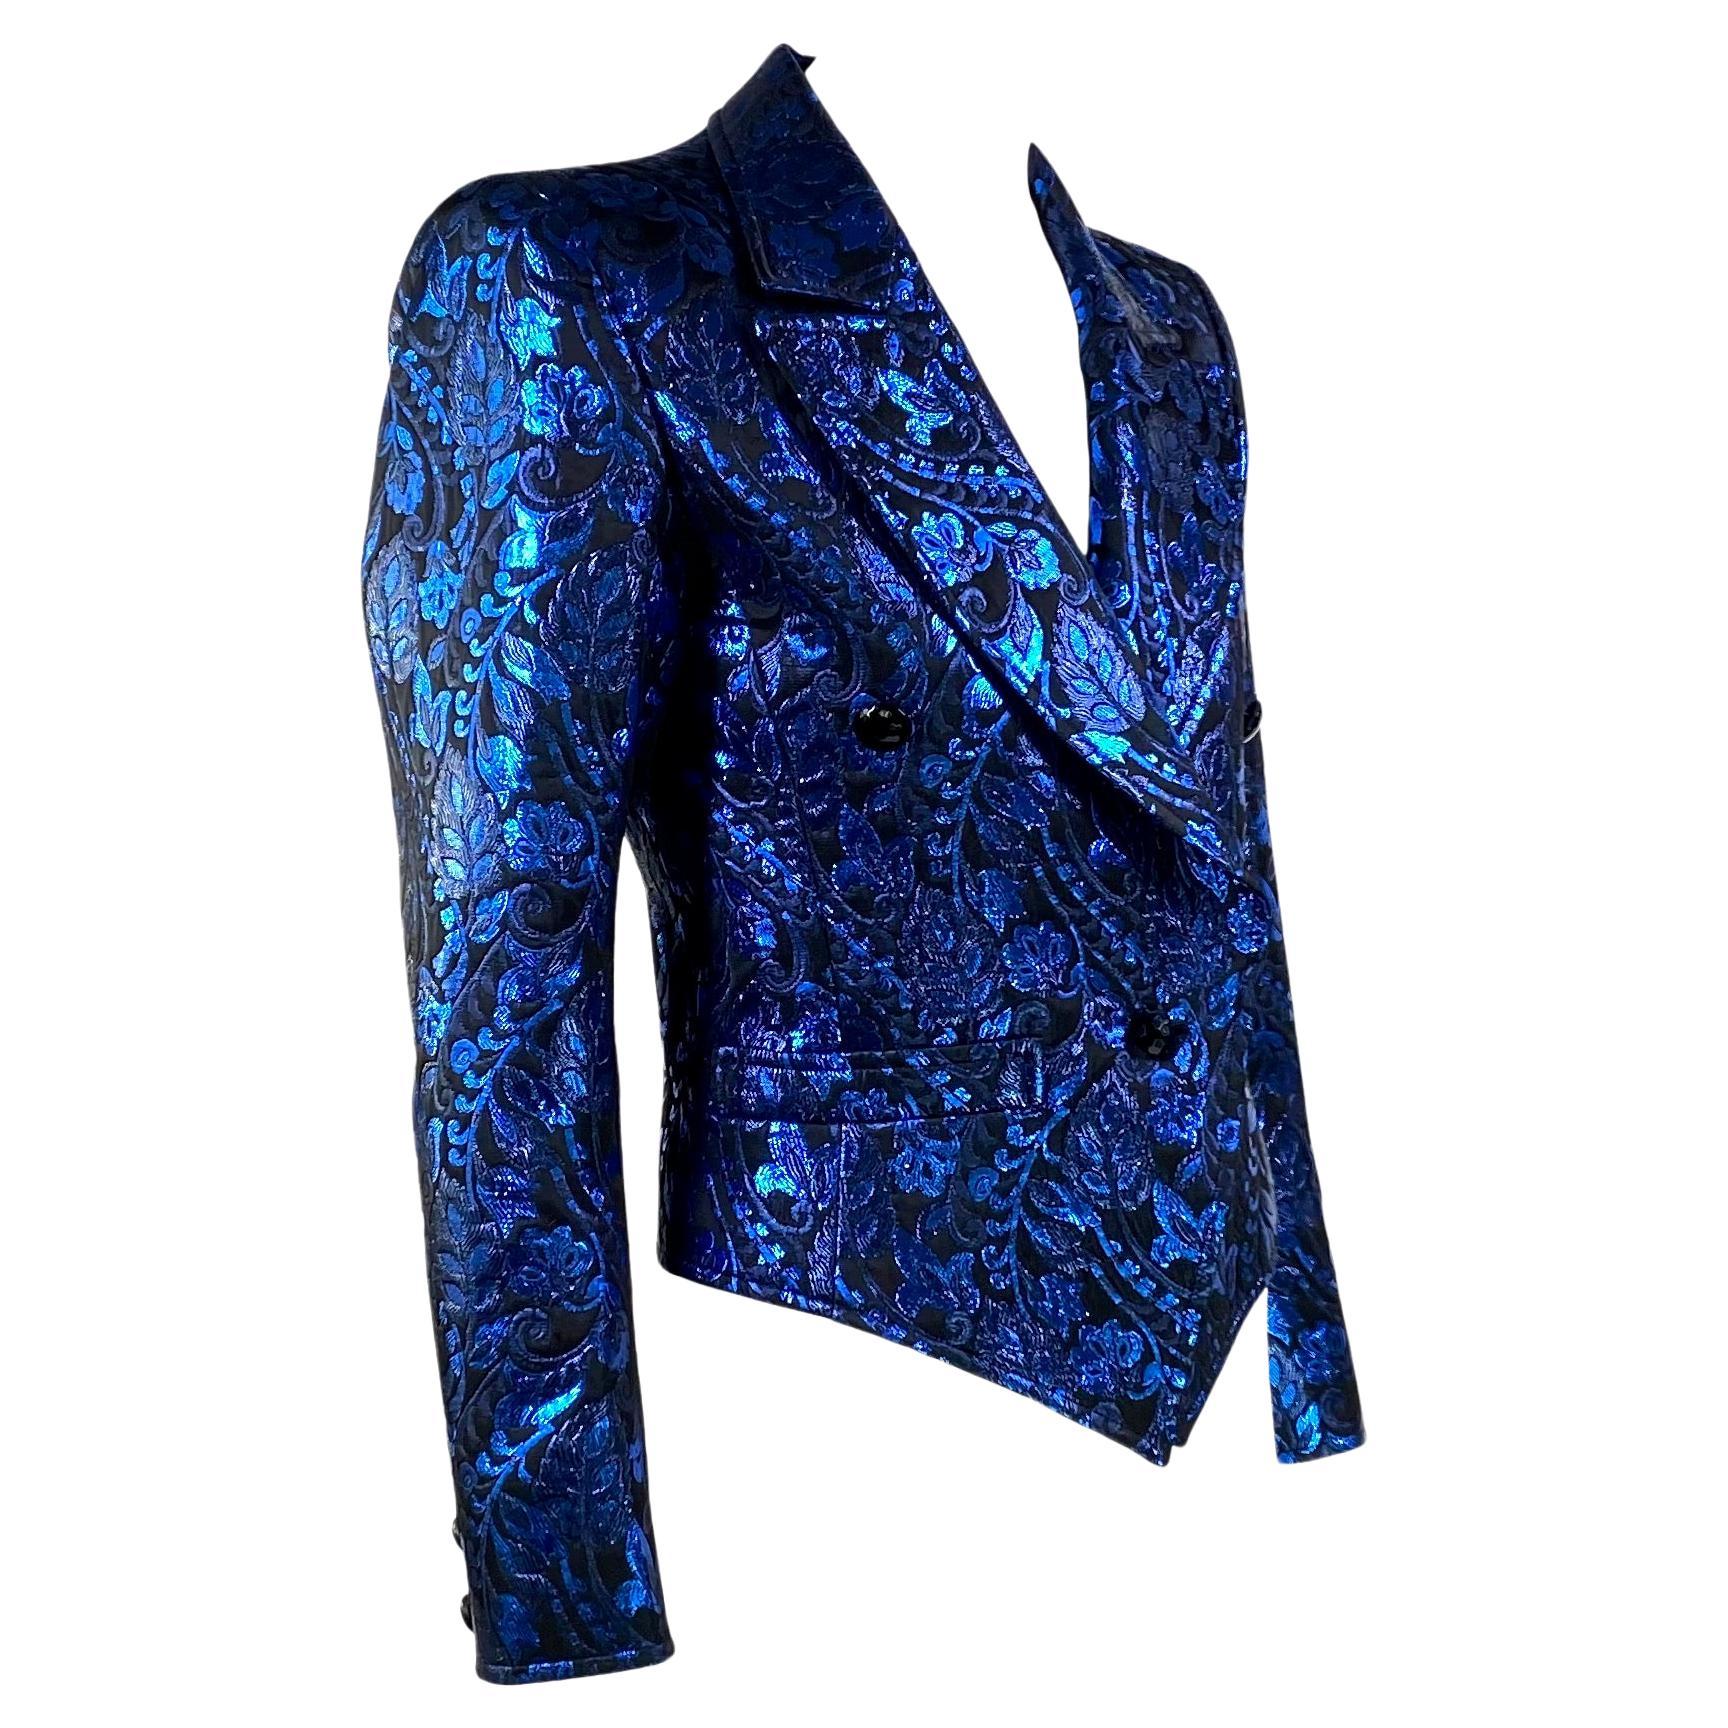 Voici un superbe blazer Saint Laurent Rive Gauche en lamé bleu métallisé, créé par Yves Saint Laurent. Datant des années 1980, cette veste comporte deux poches sur le devant, un large revers et un pseudo-double boutonnage. Ce blazer chatoyant est la